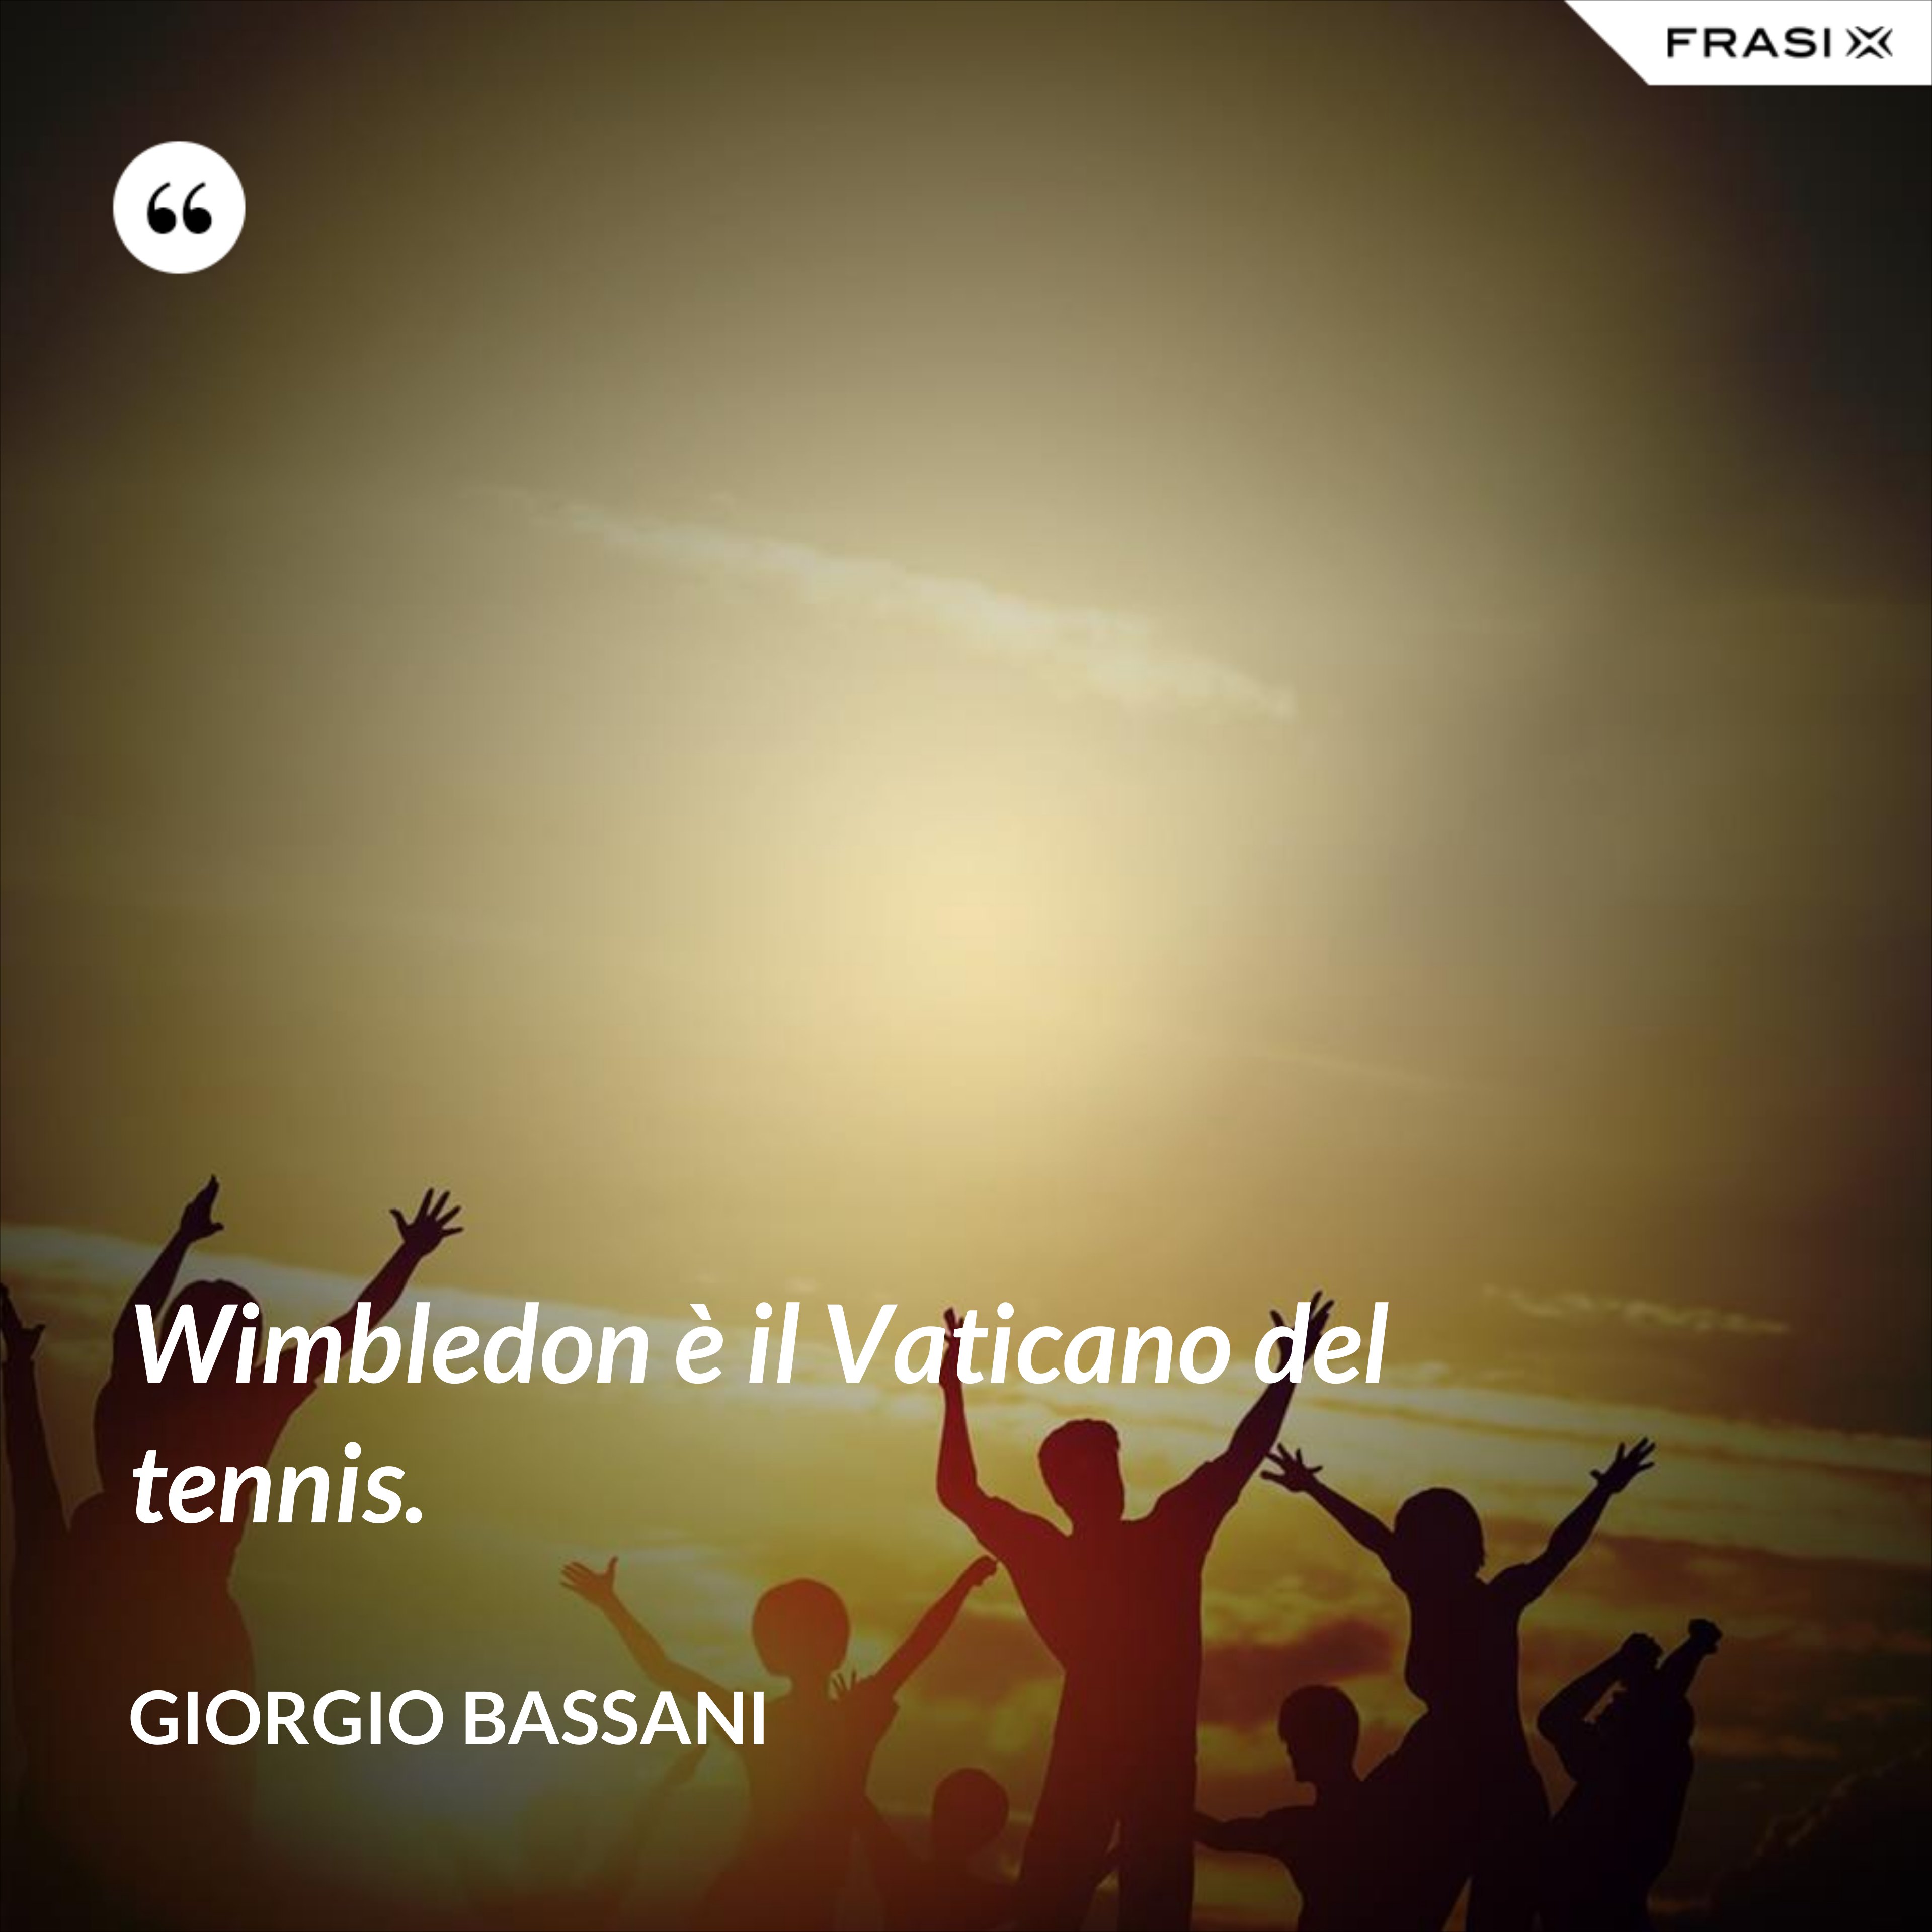 Wimbledon è il Vaticano del tennis. - Giorgio Bassani